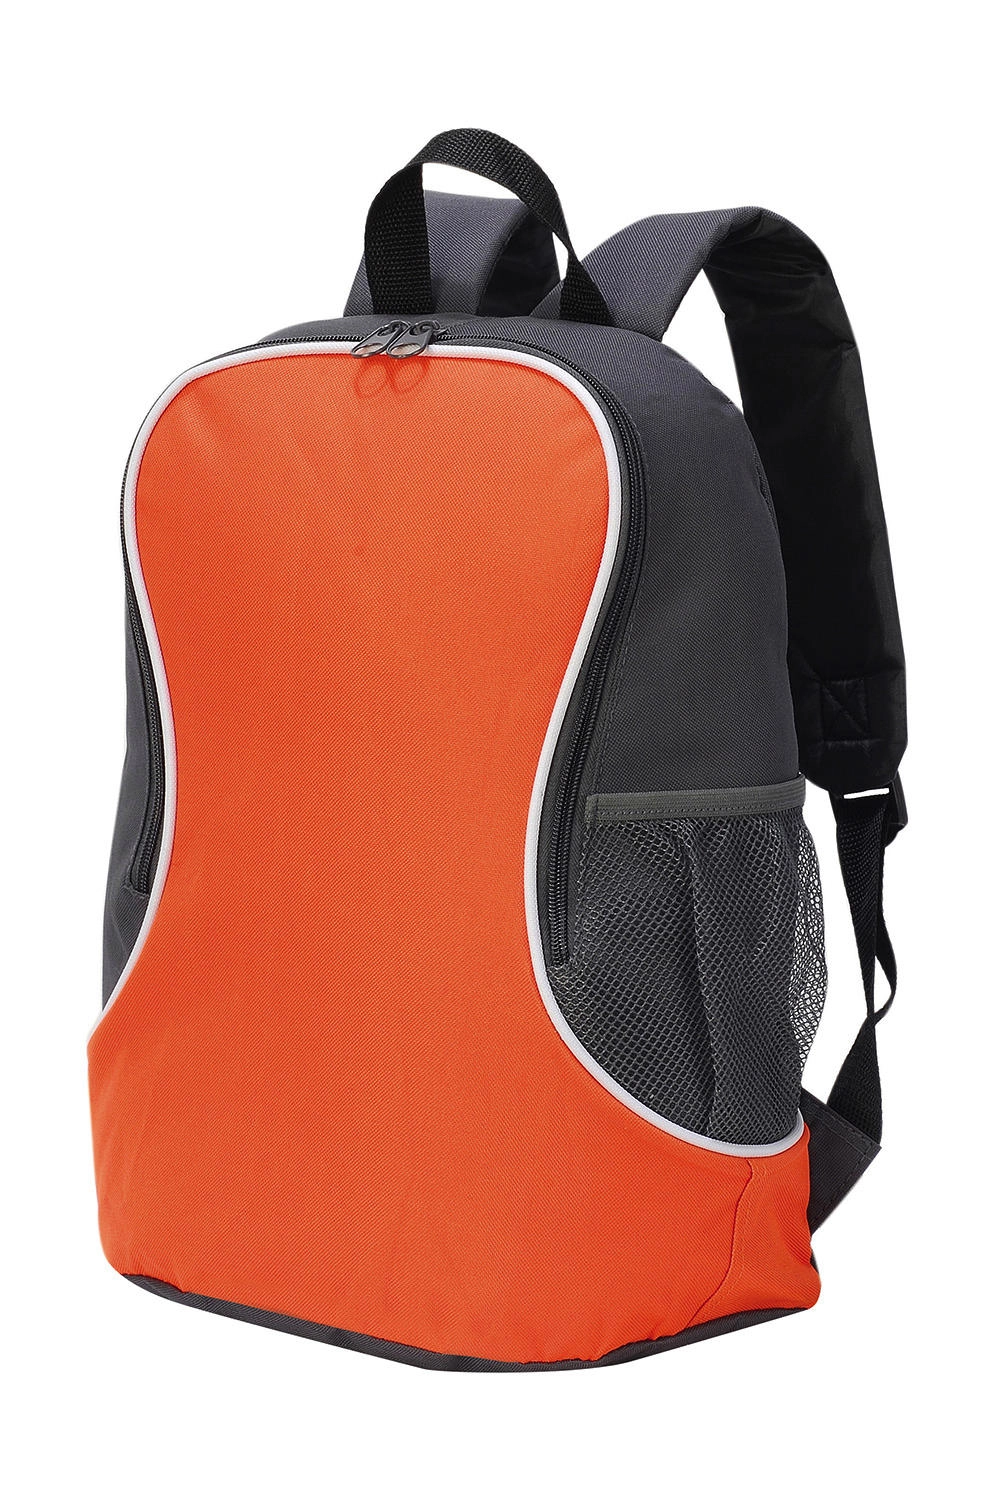 Fuji Basic Backpack zum Besticken und Bedrucken in der Farbe Orange/Dark Grey mit Ihren Logo, Schriftzug oder Motiv.